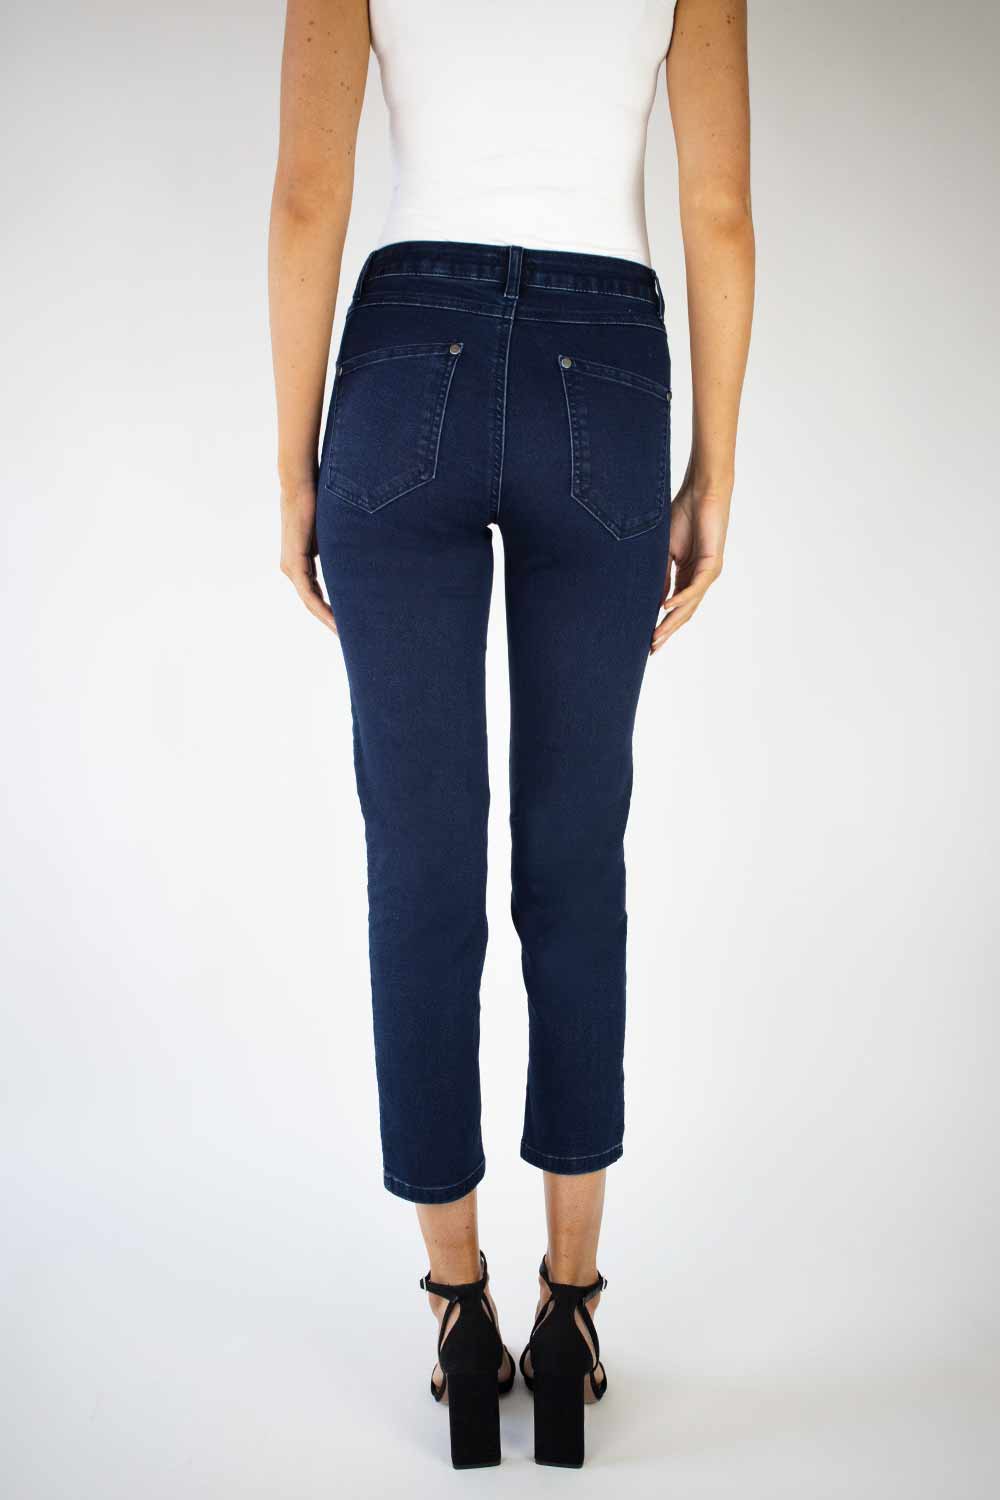 No2Moro Juliet Jeans-8/36-Fi&Co Boutique